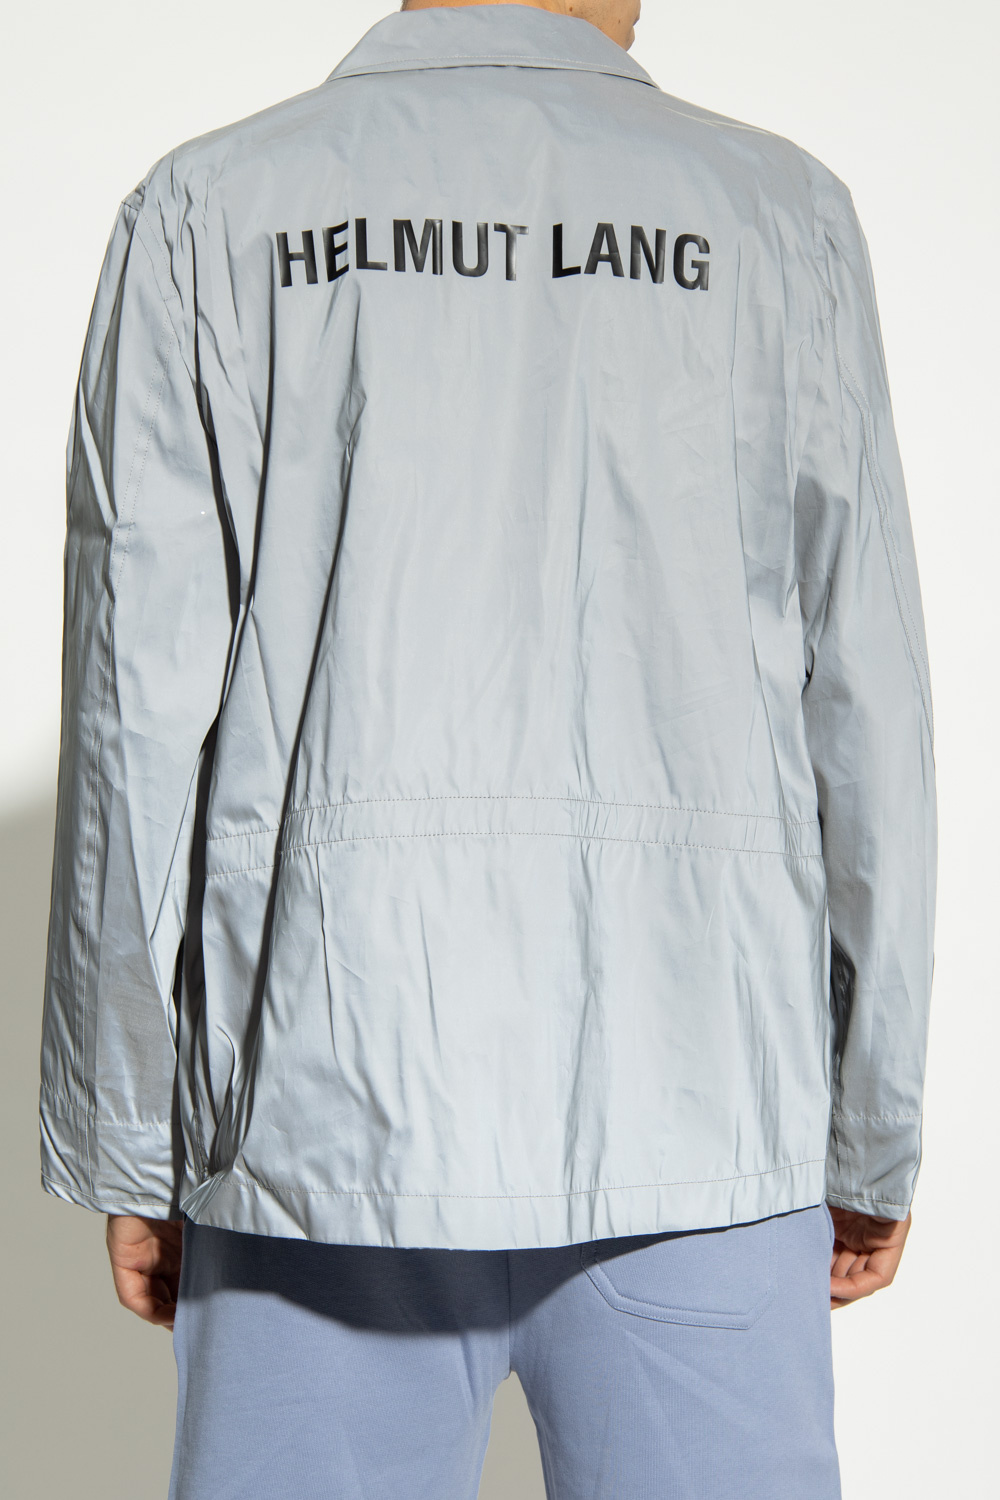 Helmut Lang t-shirt da donna firmate